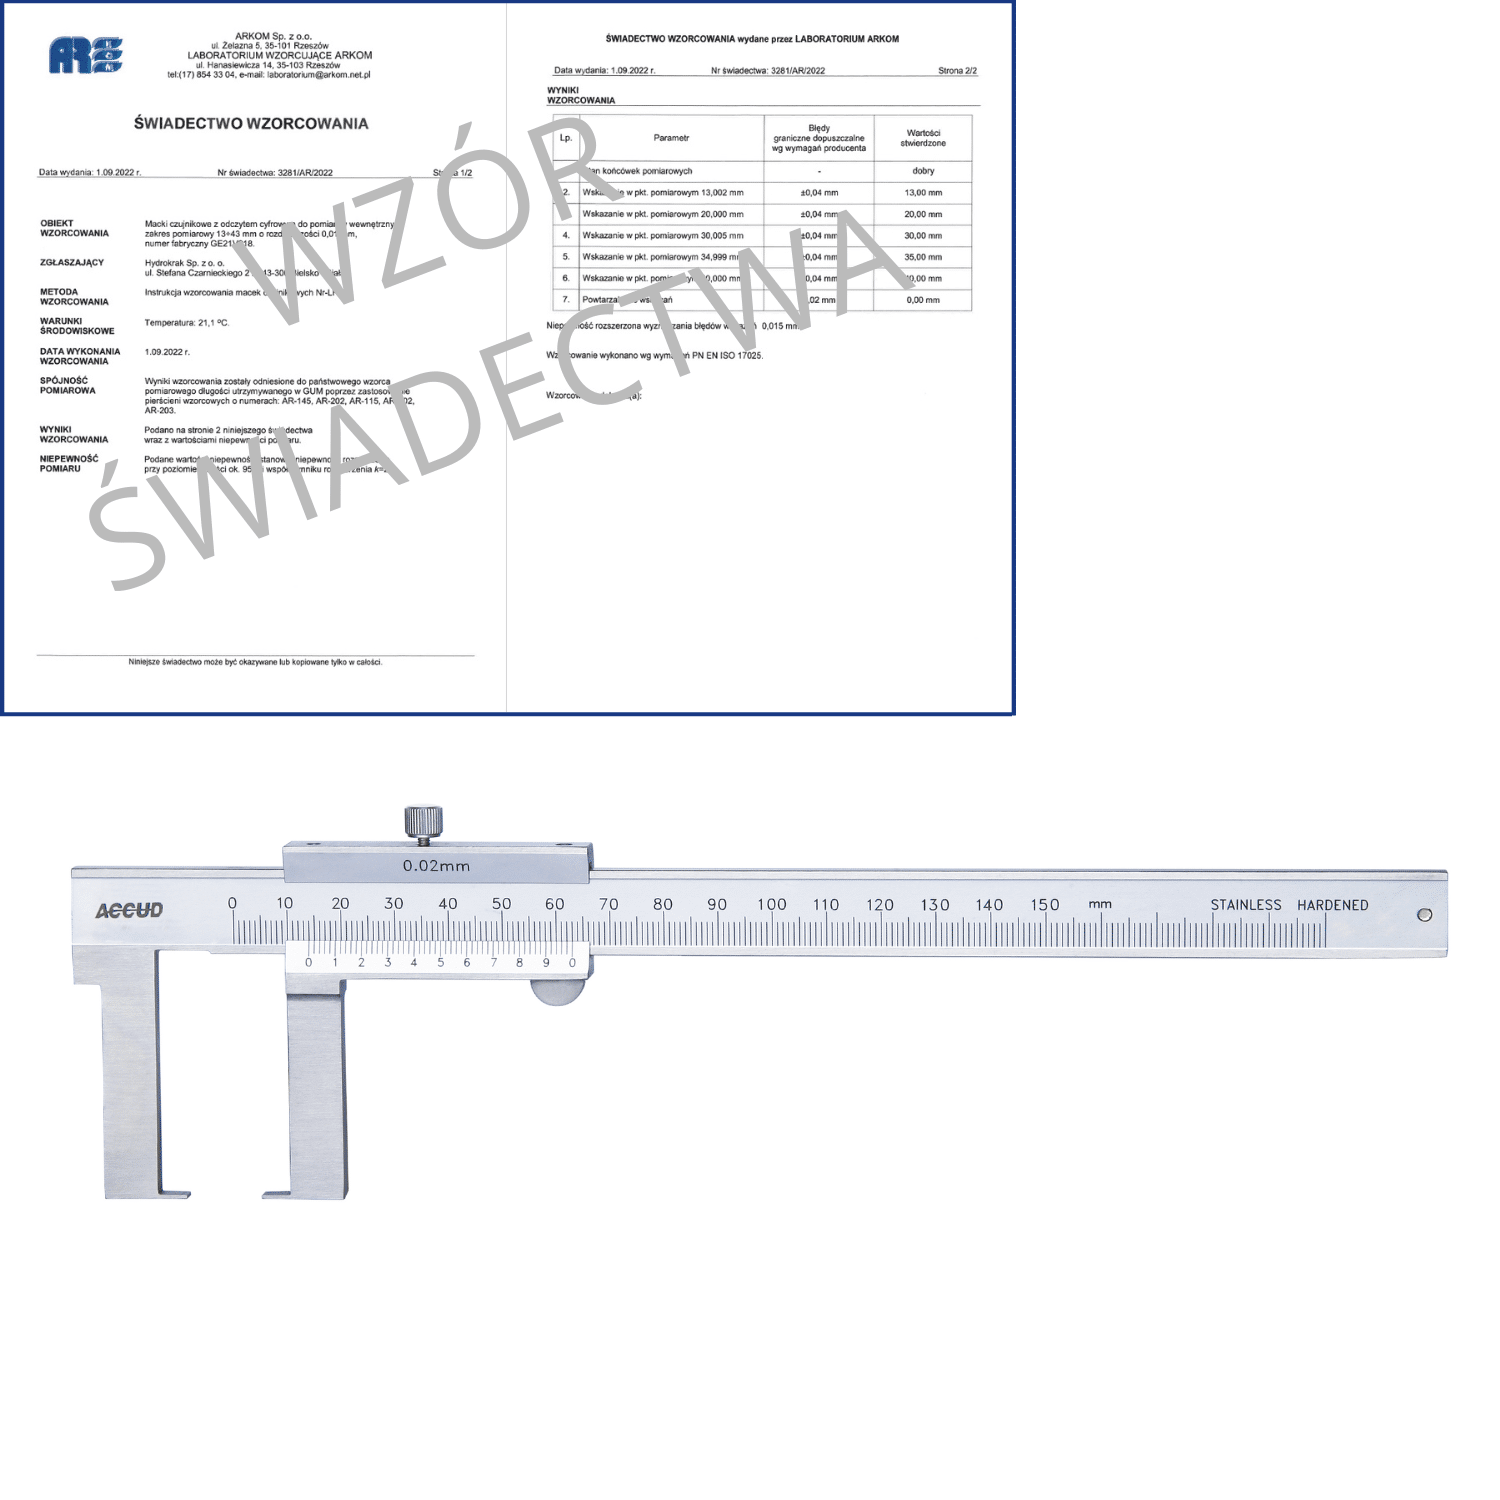 ACCUD suwmiarka analogowa 150/0.02 mm do pomiarów zewnętrznych + świadectwo wzorcowania 143-006-11 WZORC (Zdjęcie 1)